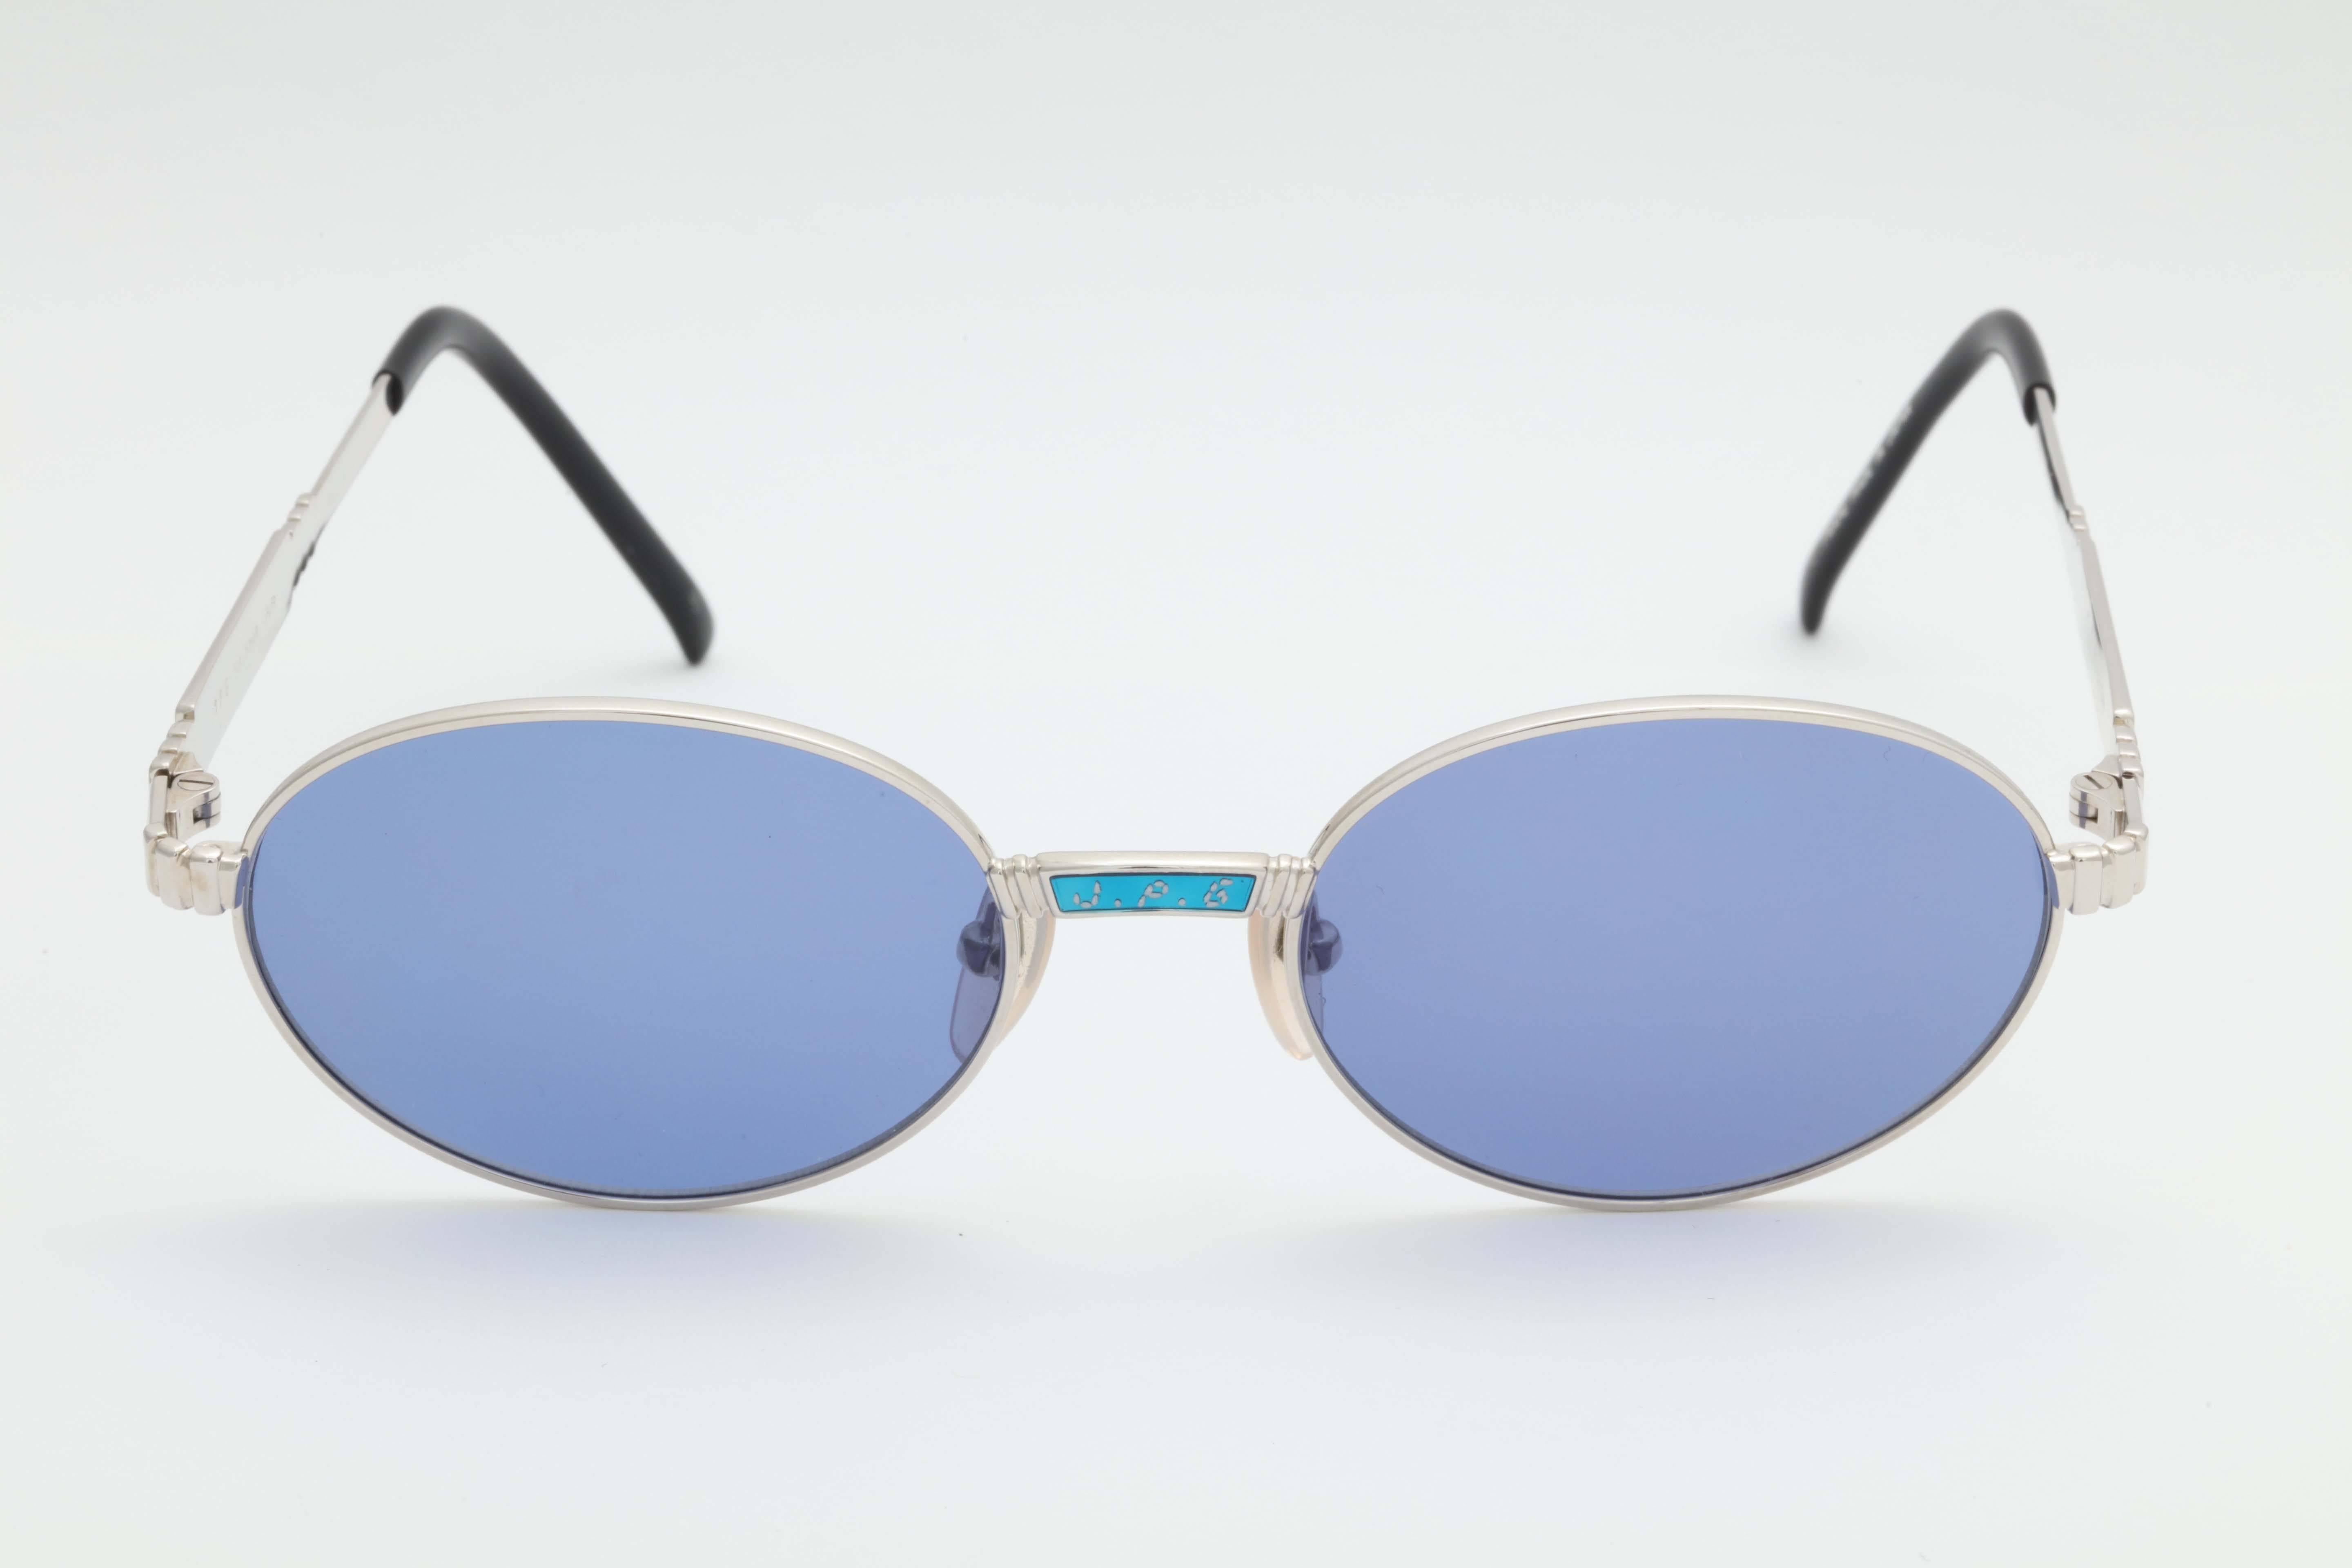 Blue Jean Paul Gaultier 58-5104 Vintage Sunglasses For Sale